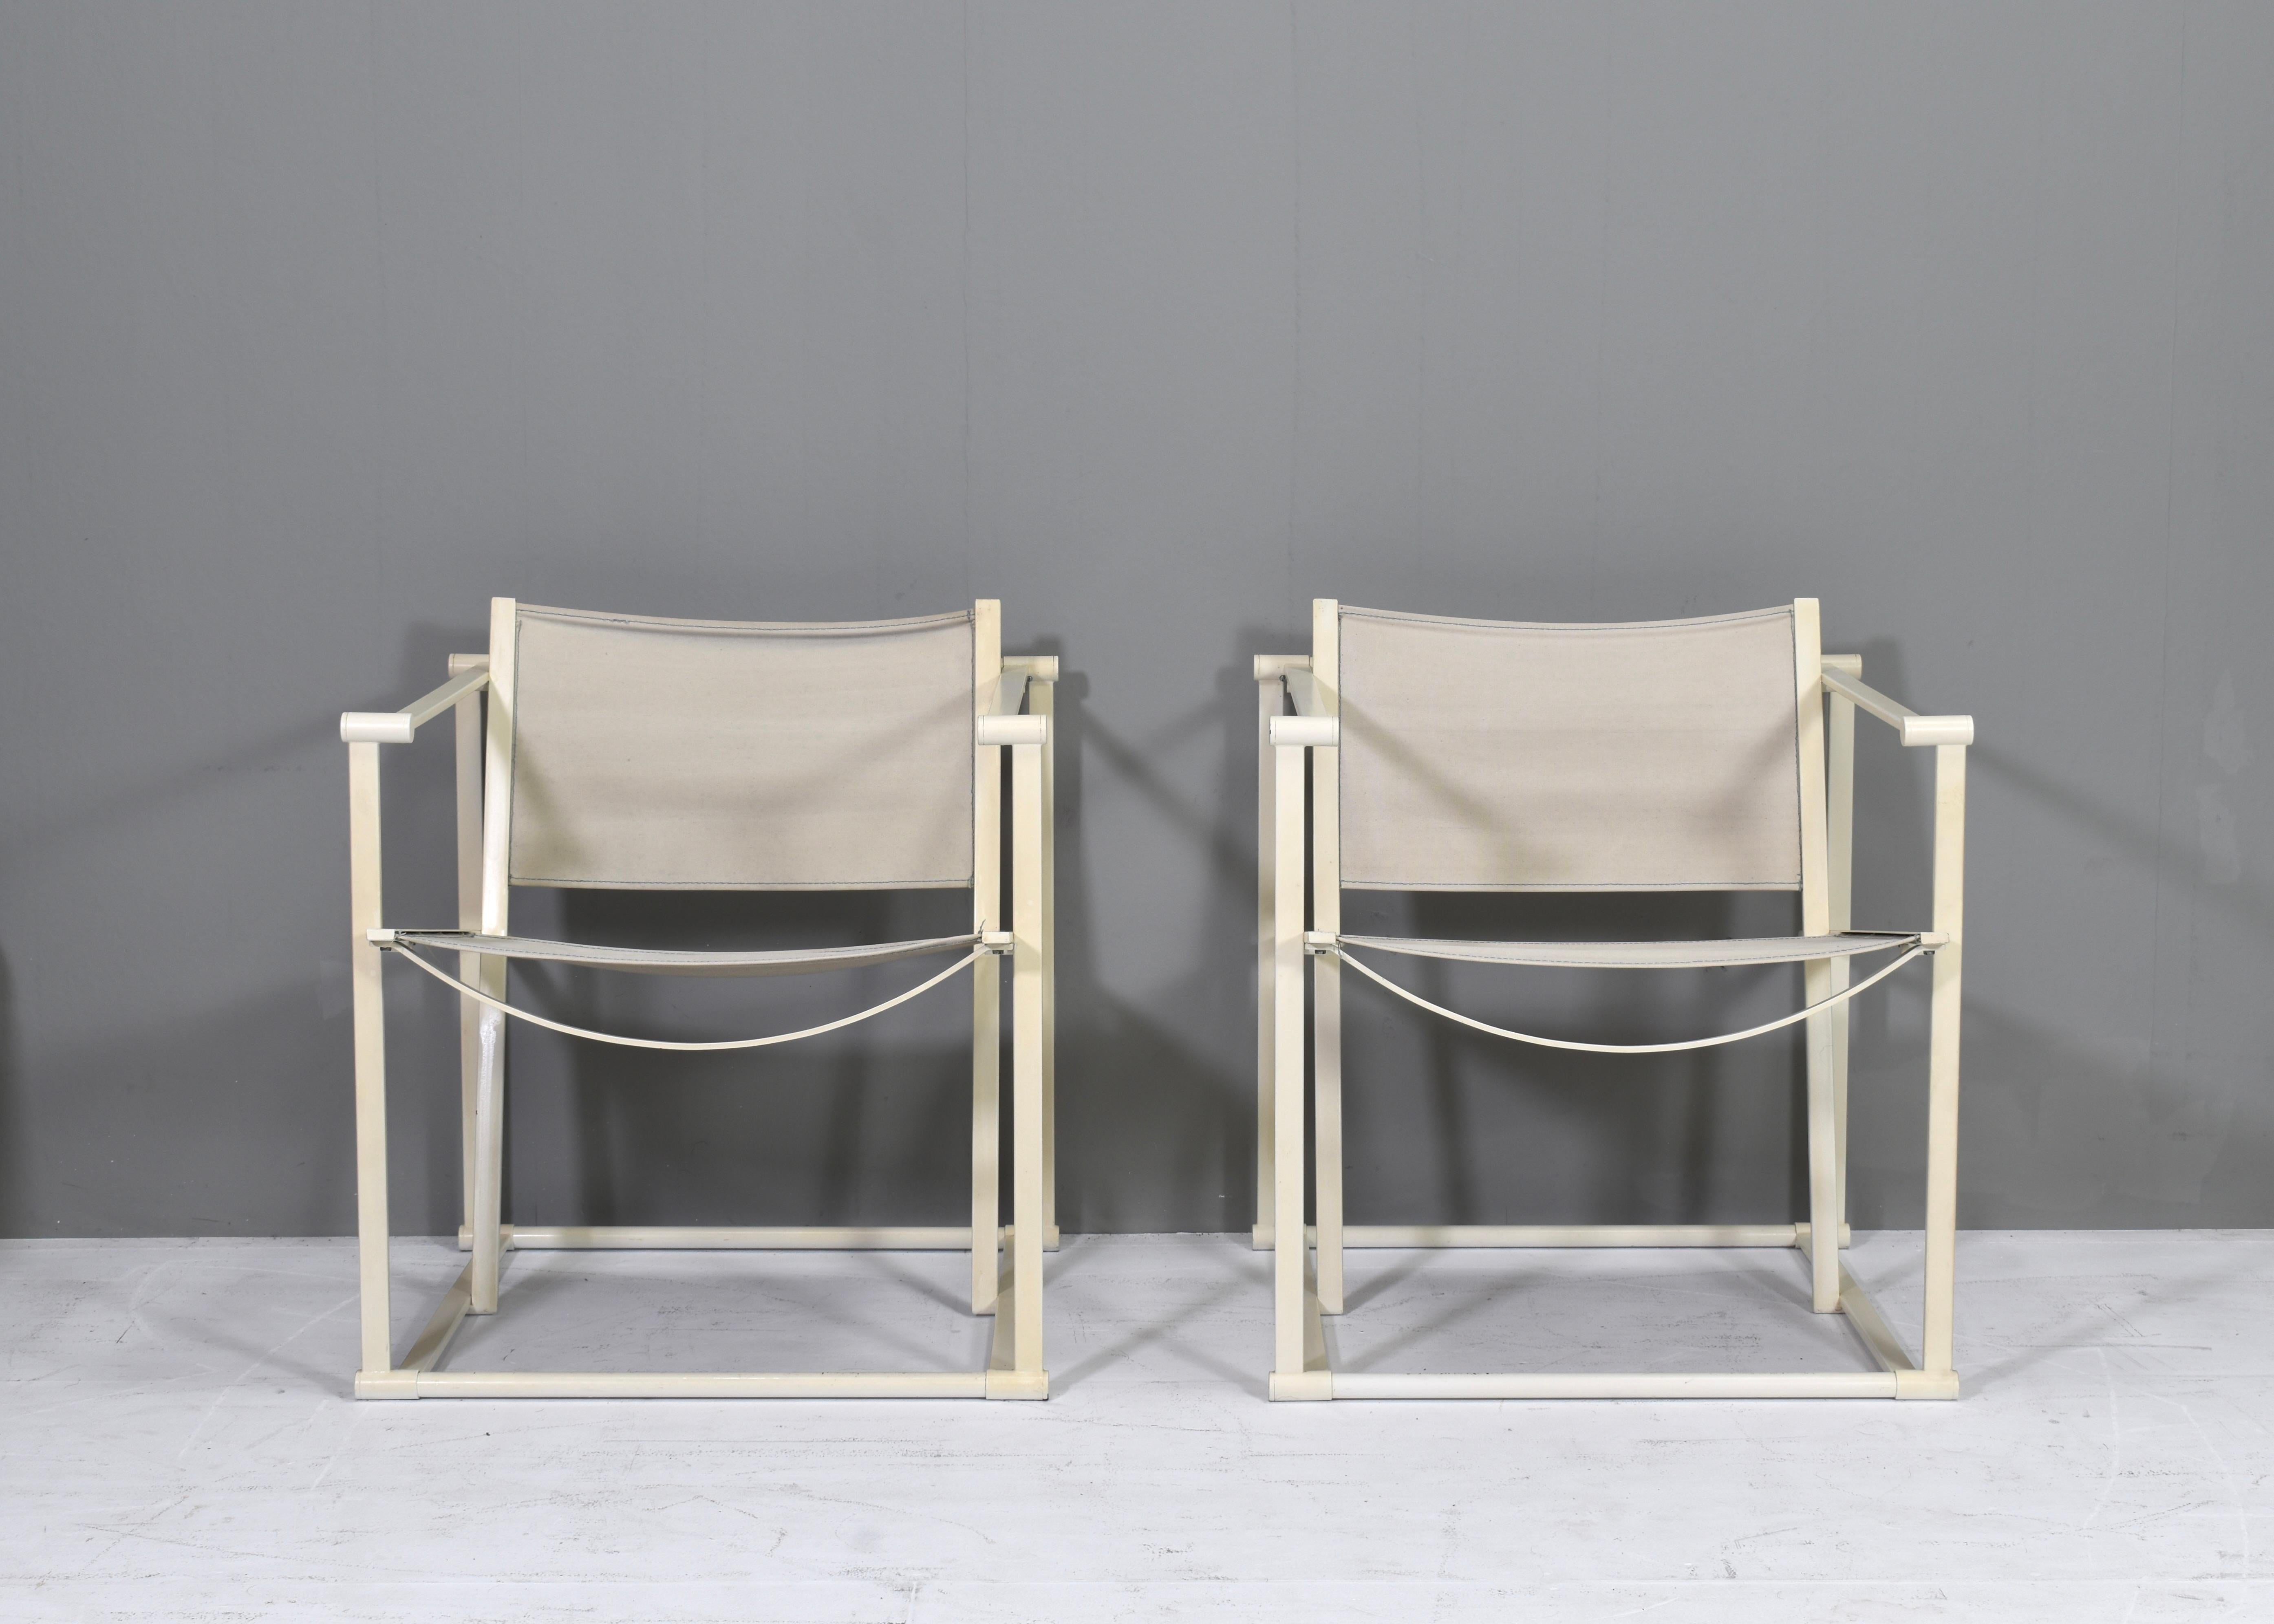 Ikonische und minimalistische Lounge-Sessel in Würfelform von Radboud van Beekum für PASTOE - Niederlande, 1981. Die Stühle sind aus cremefarben lackiertem Metall mit originaler Leinwandbespannung. Obwohl es nicht notwendig ist, können wir auf